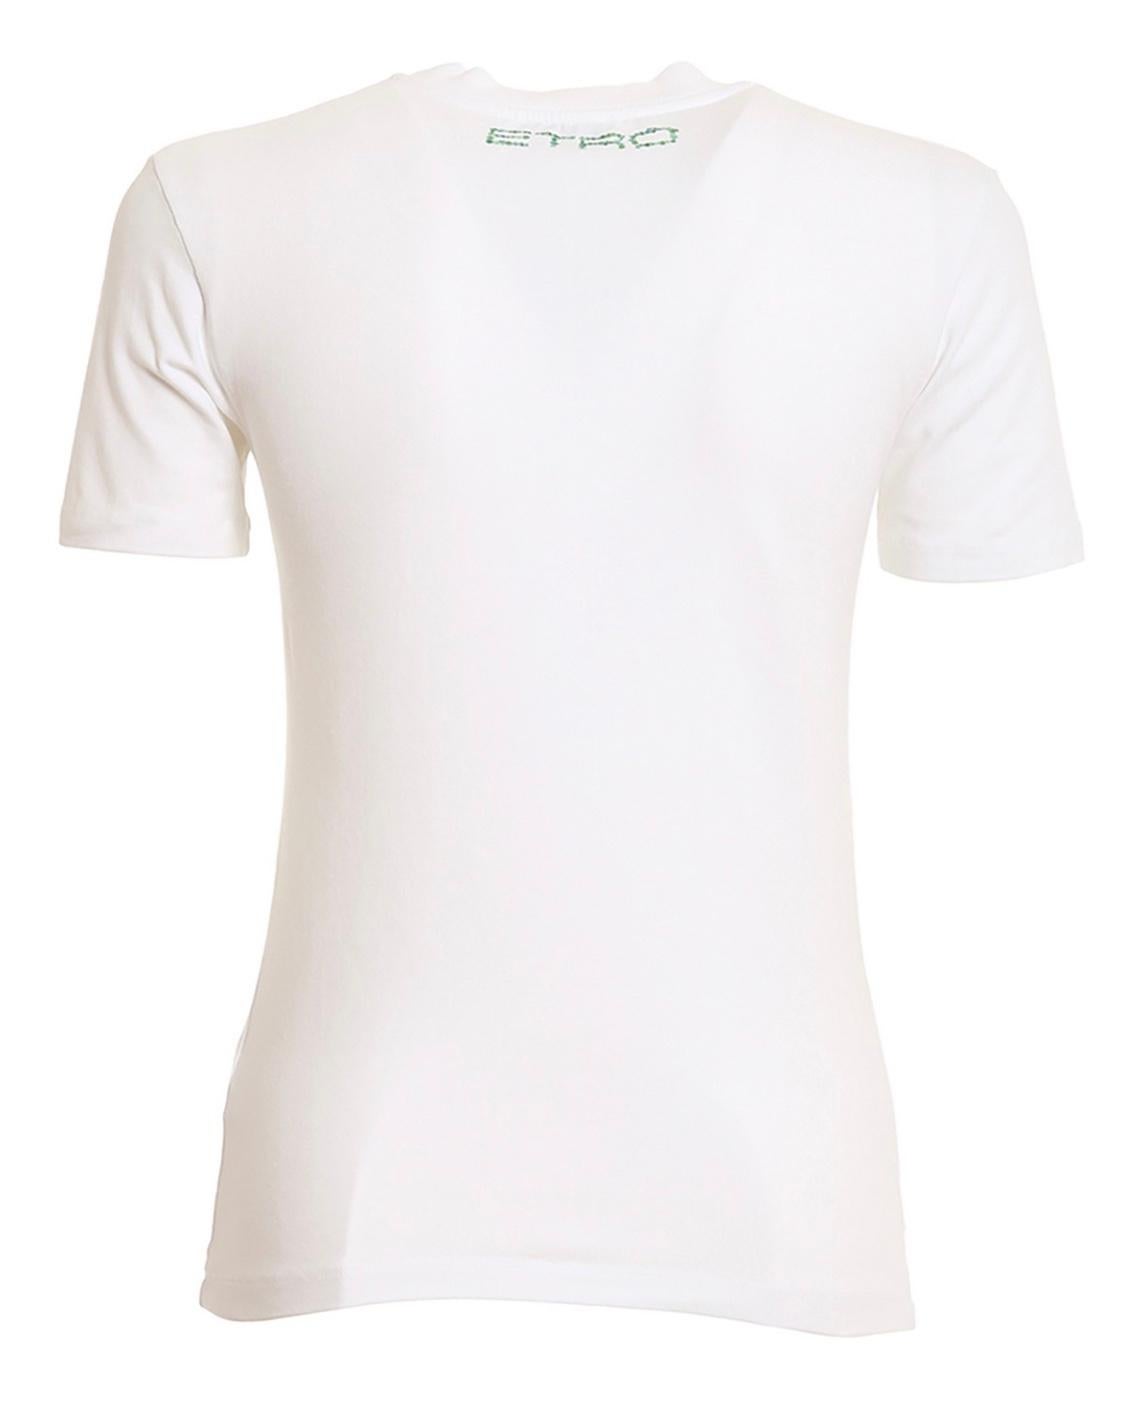 Grafisches T-Shirt von Etro mit grünem Mandala-Muster auf der Vorderseite. Dieses Alltagsmodell aus Stretch-Baumwolle hat einen Rundhalsausschnitt und kurze Ärmel.
90% Baumwolle, 10% Elasthan.
Hergestellt in Italien. 
Brandneu, nie getragen, mit